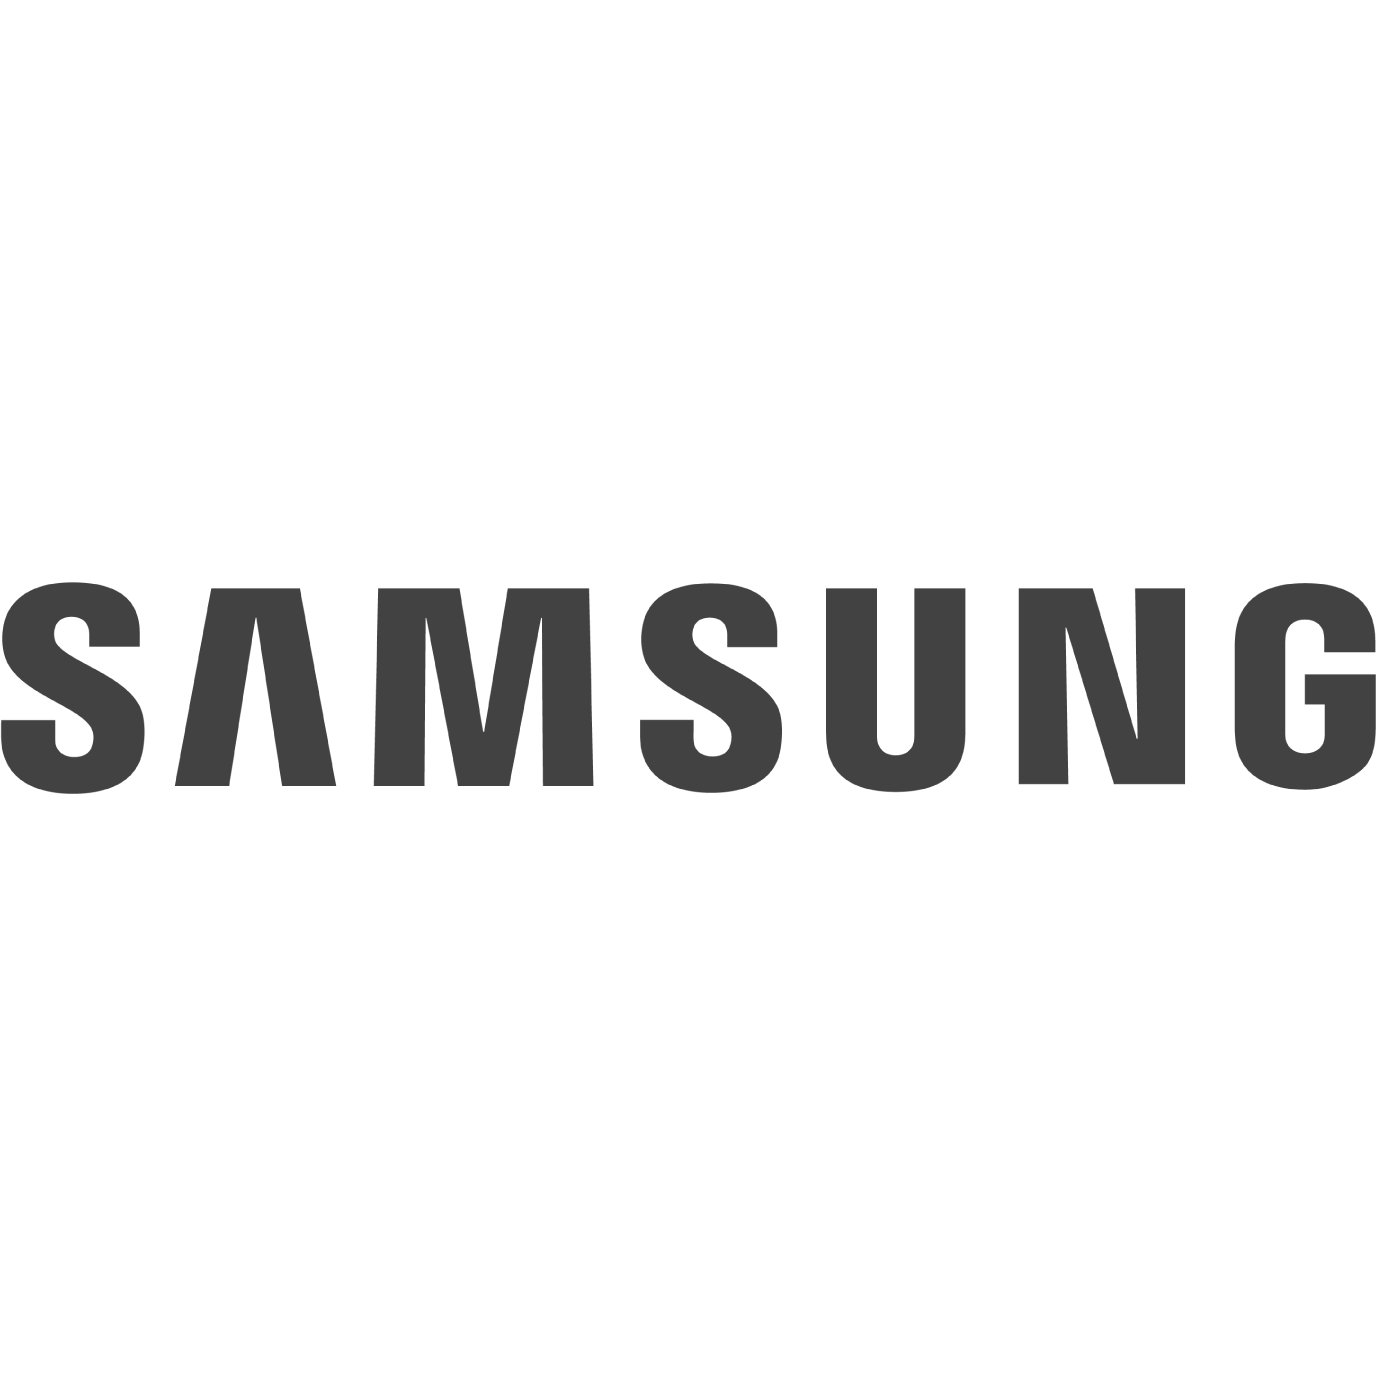 Samsung Galaxy A Series